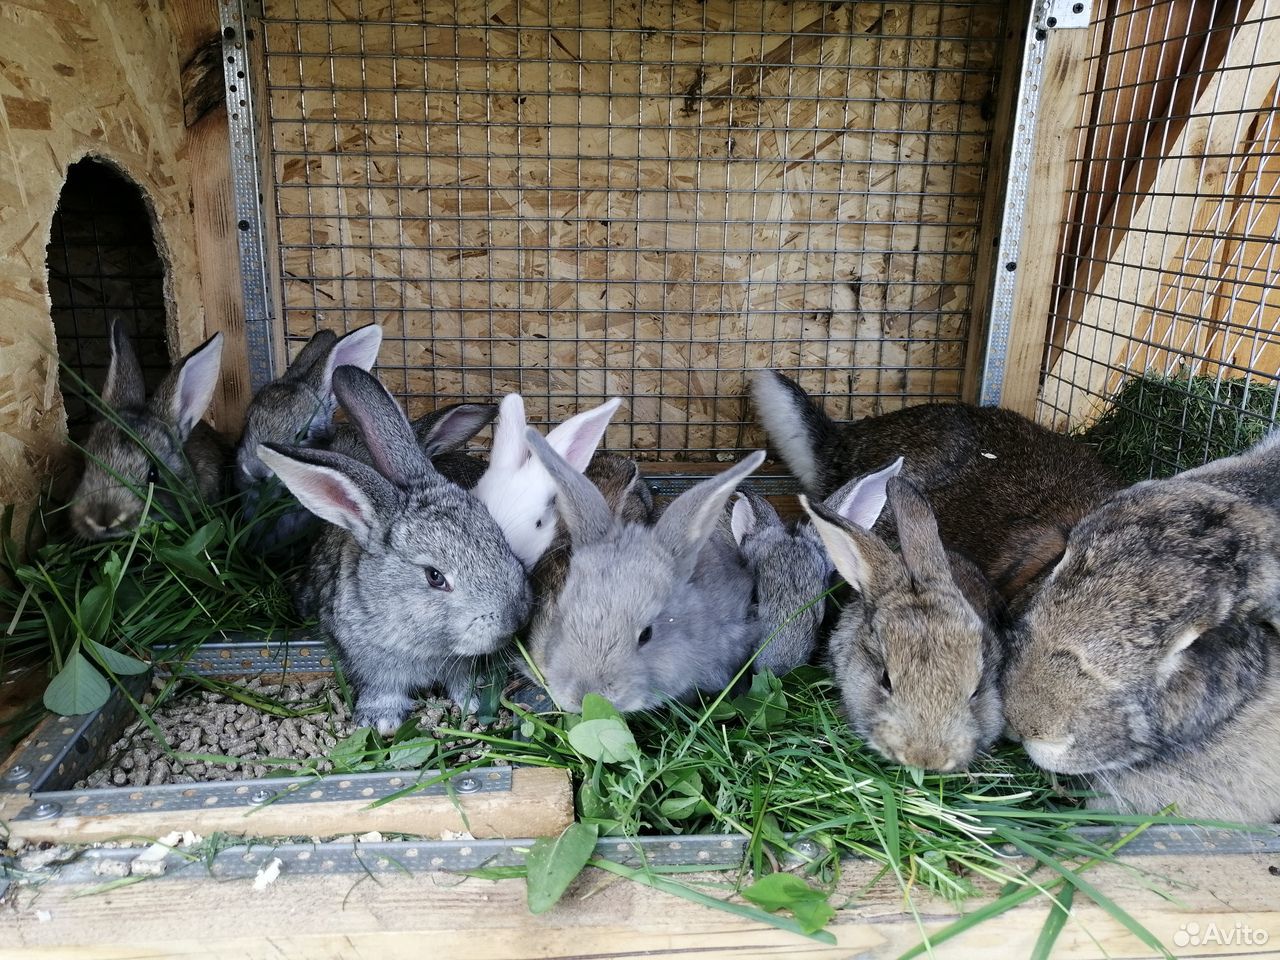 Купить кроликов в воронежской области. Продажа кроликов. Кролики Воронежская область авито продажа.